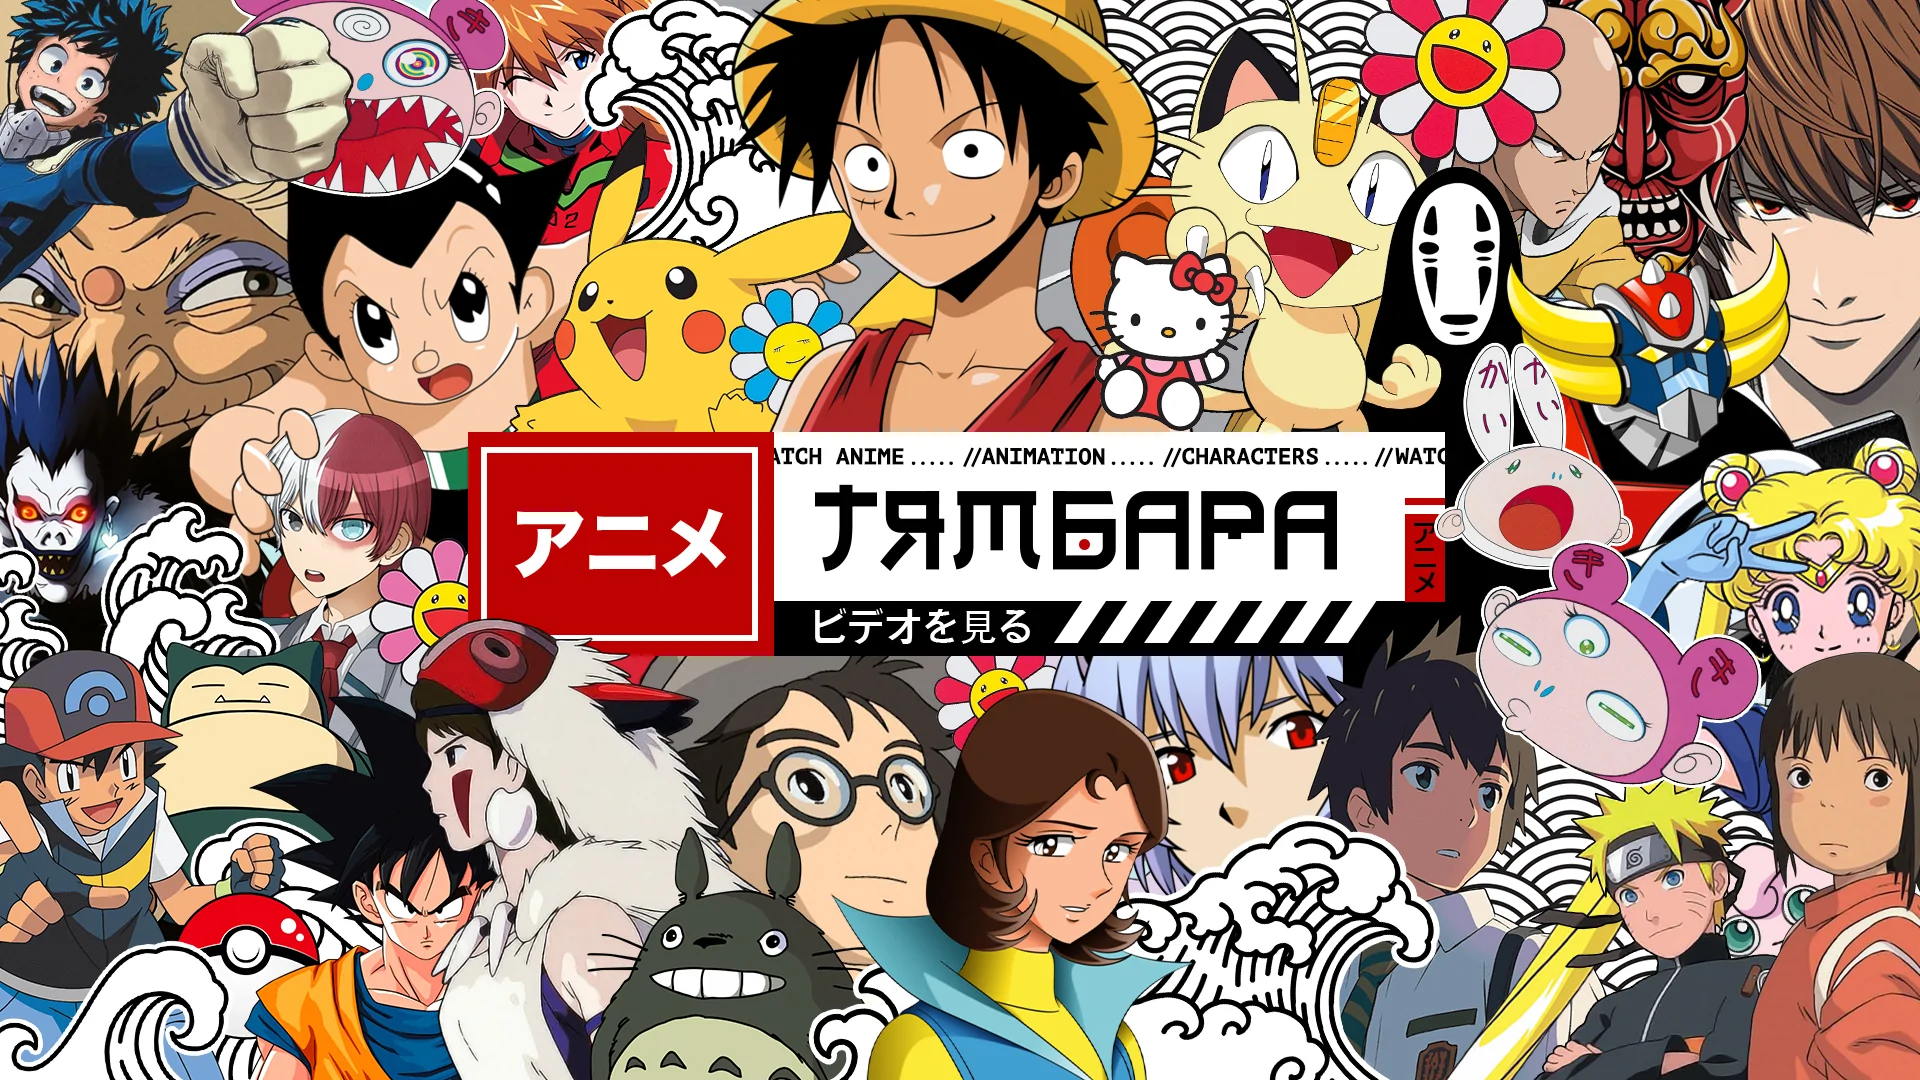 Смотреть аниме: тямбара — честь и достоинство японской анимации